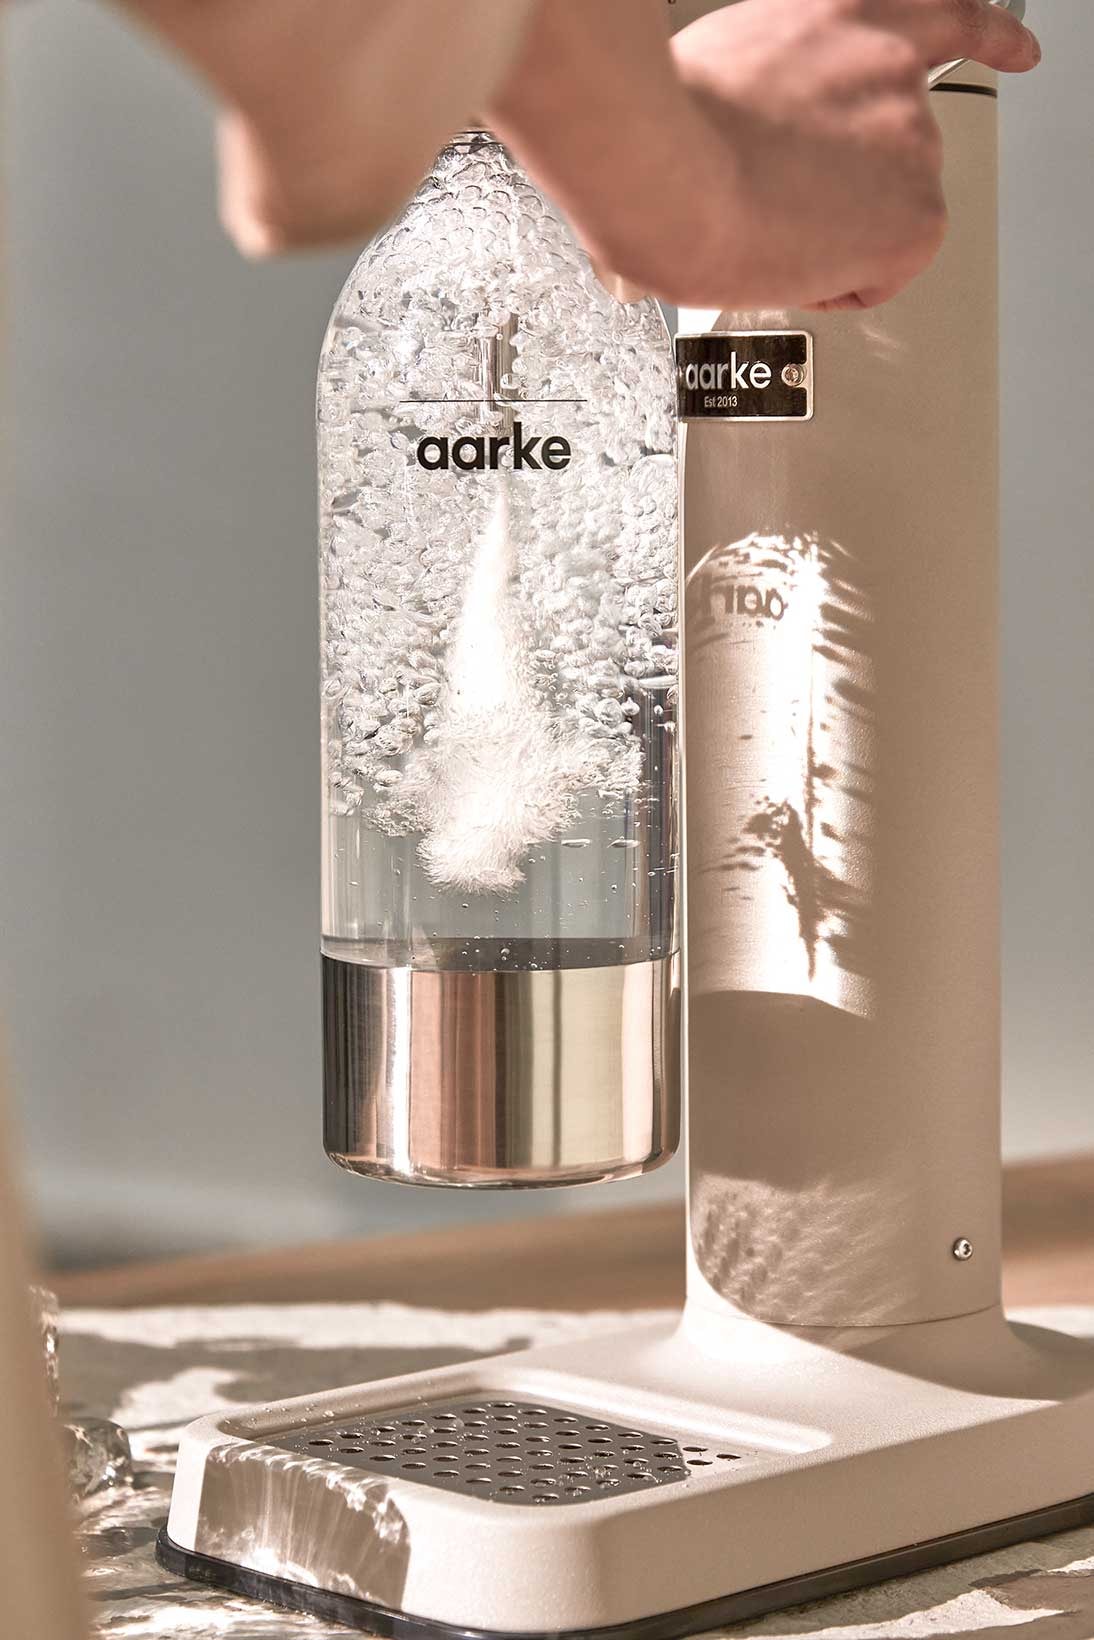 Aarke Carbonator III Stainless Steel Sparkling Water Maker Machine +  Reviews